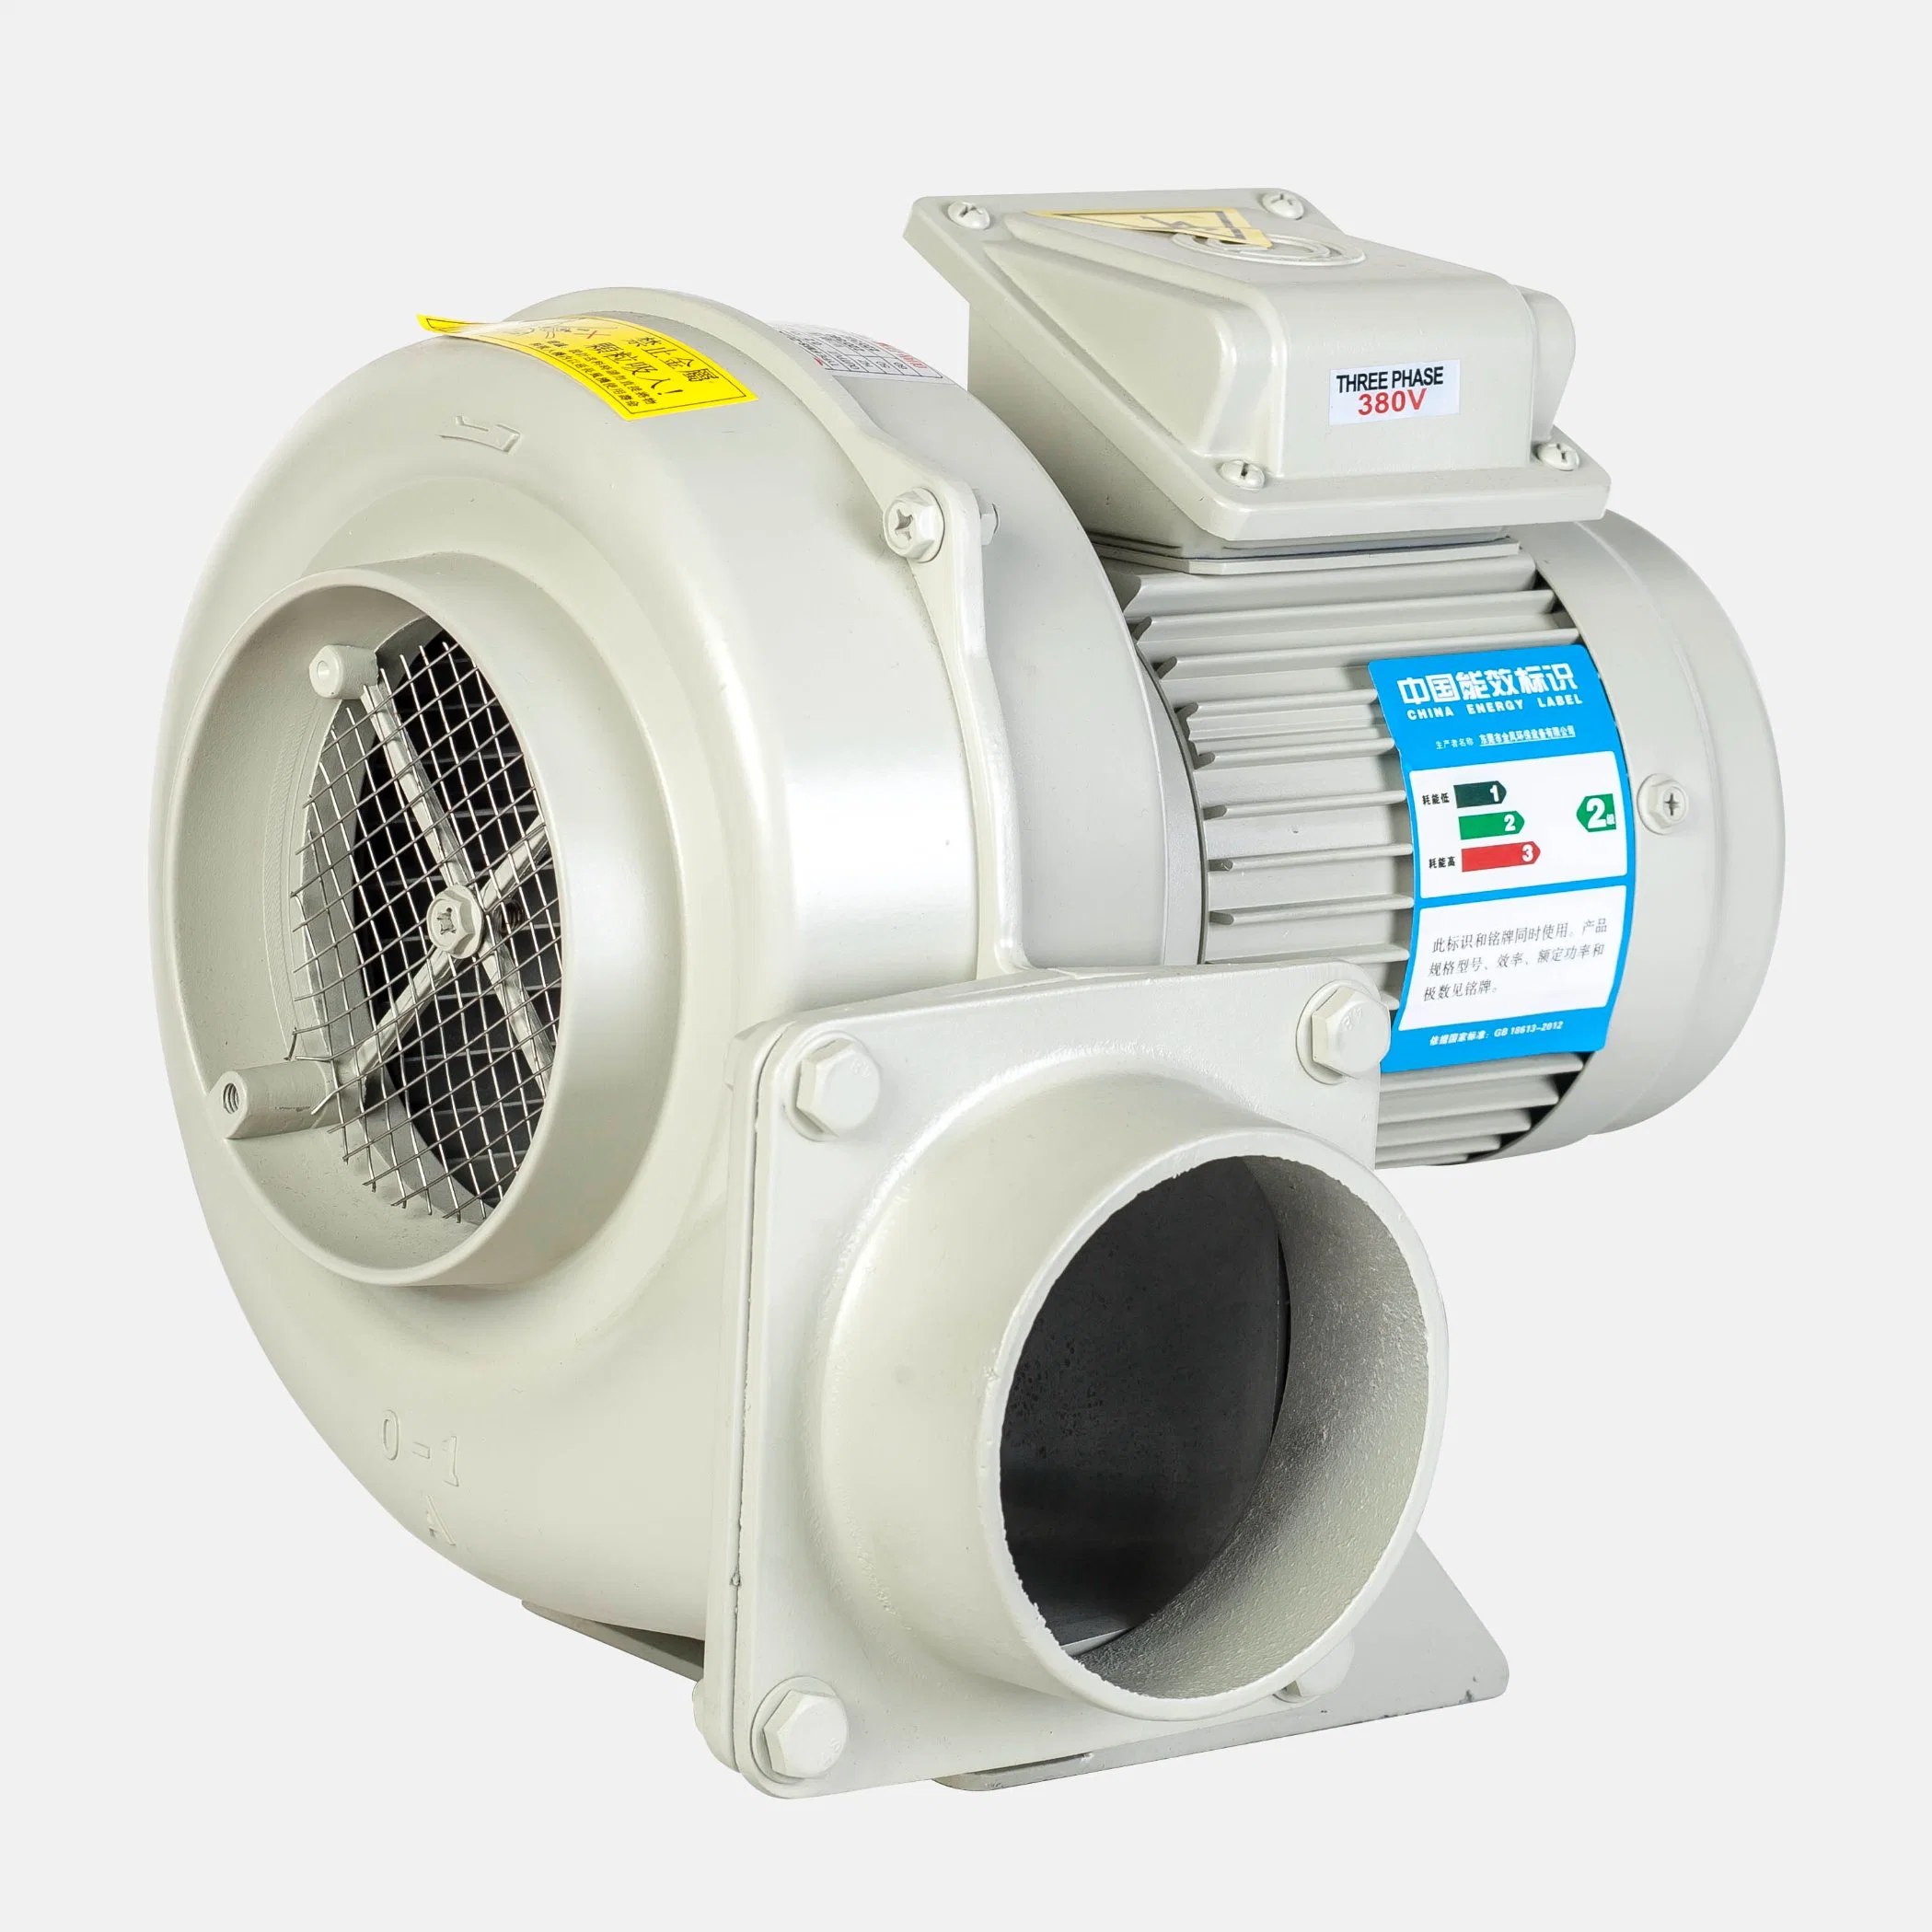 Fms 0.2kw ventilador centrífugo Ventilador de série para resfriamento do Equipamento